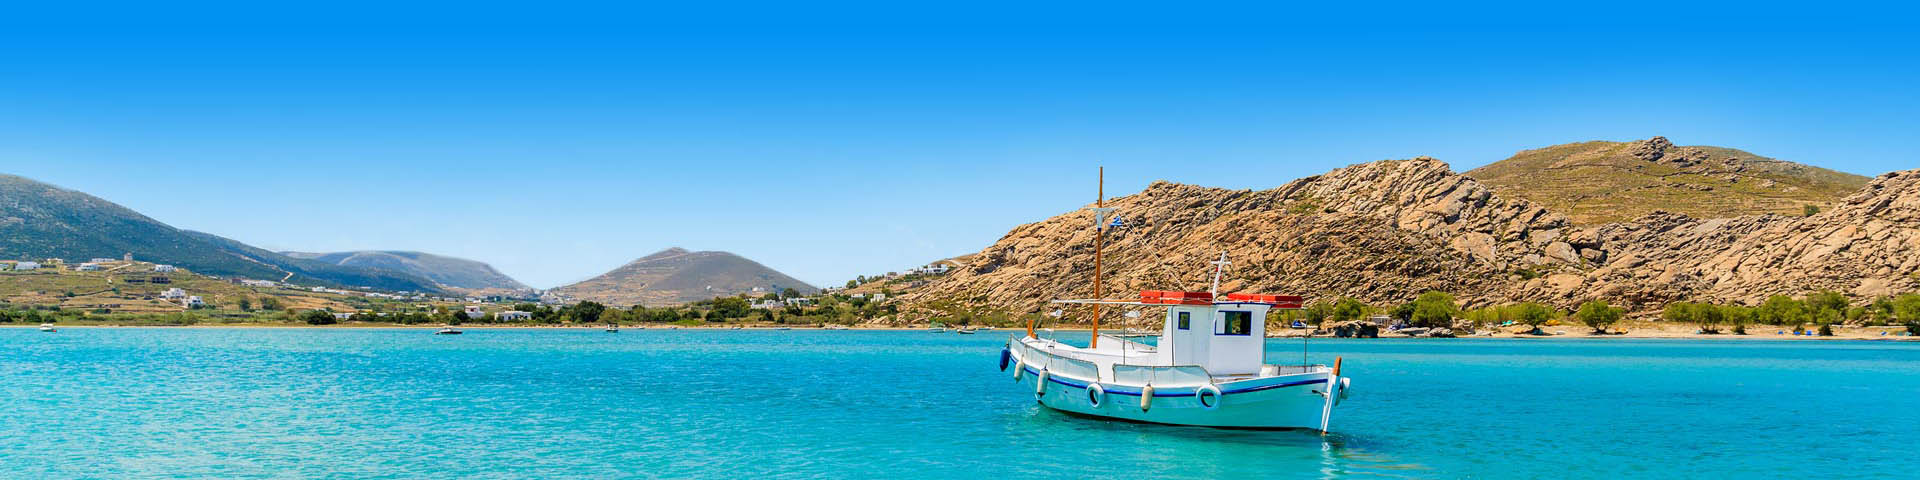 Vissersboot in baai Griekenland